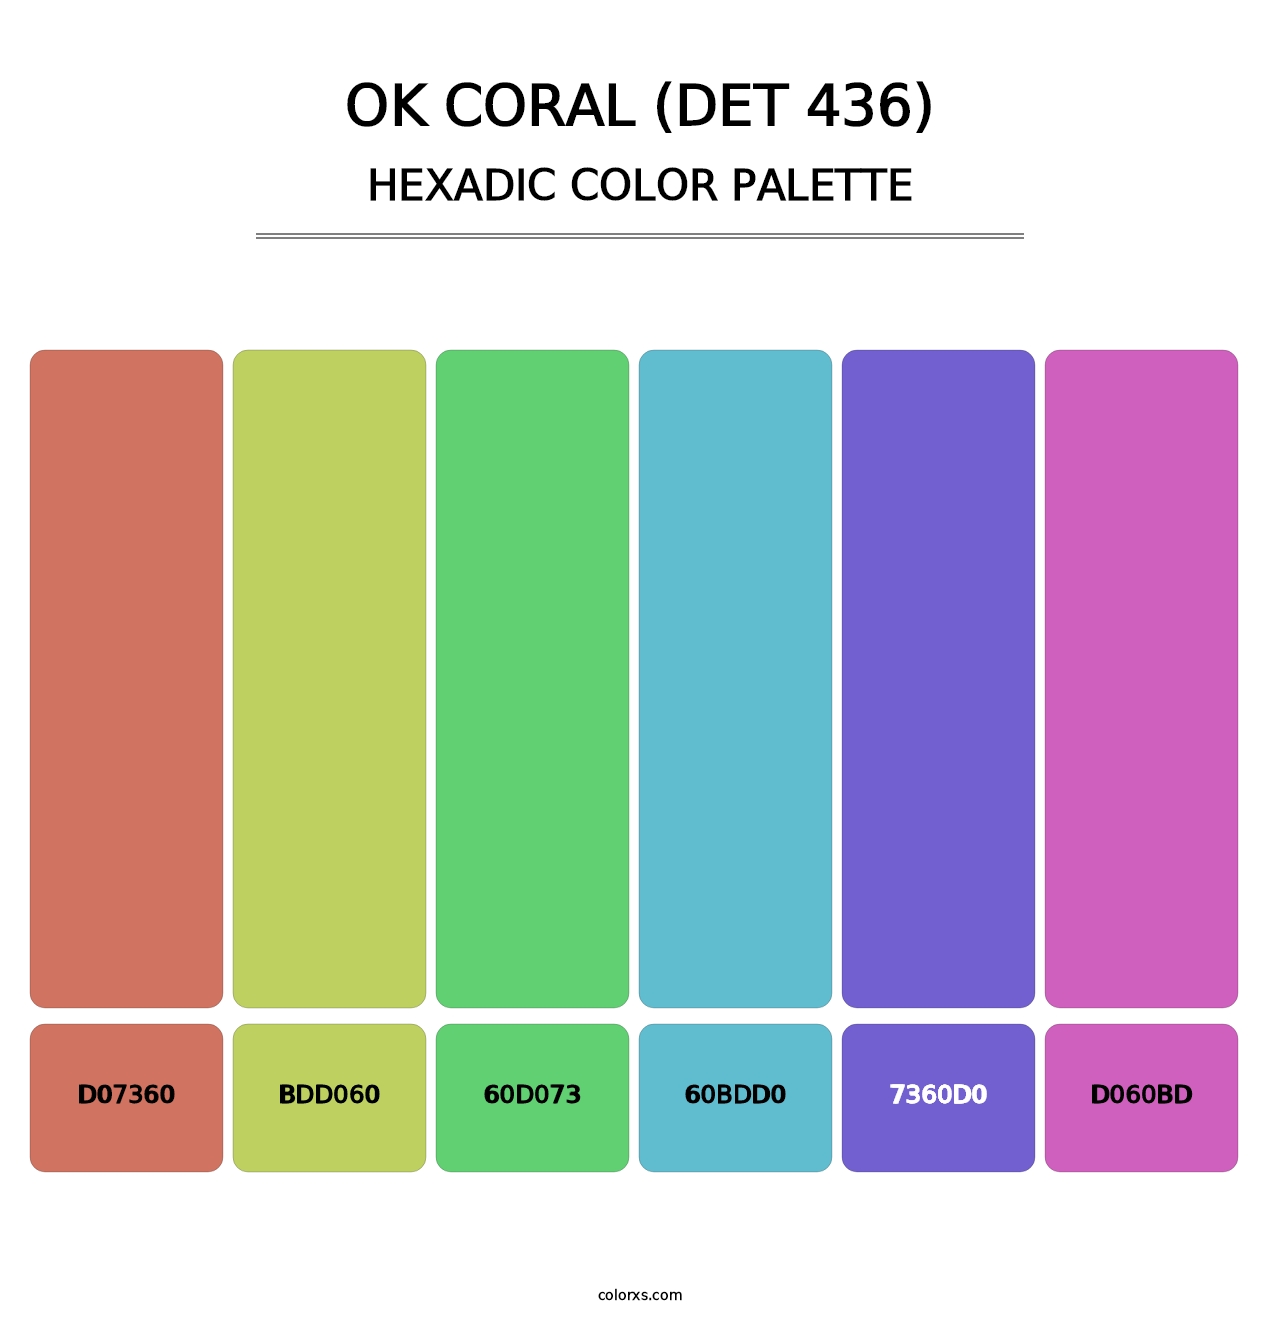 OK Coral (DET 436) - Hexadic Color Palette